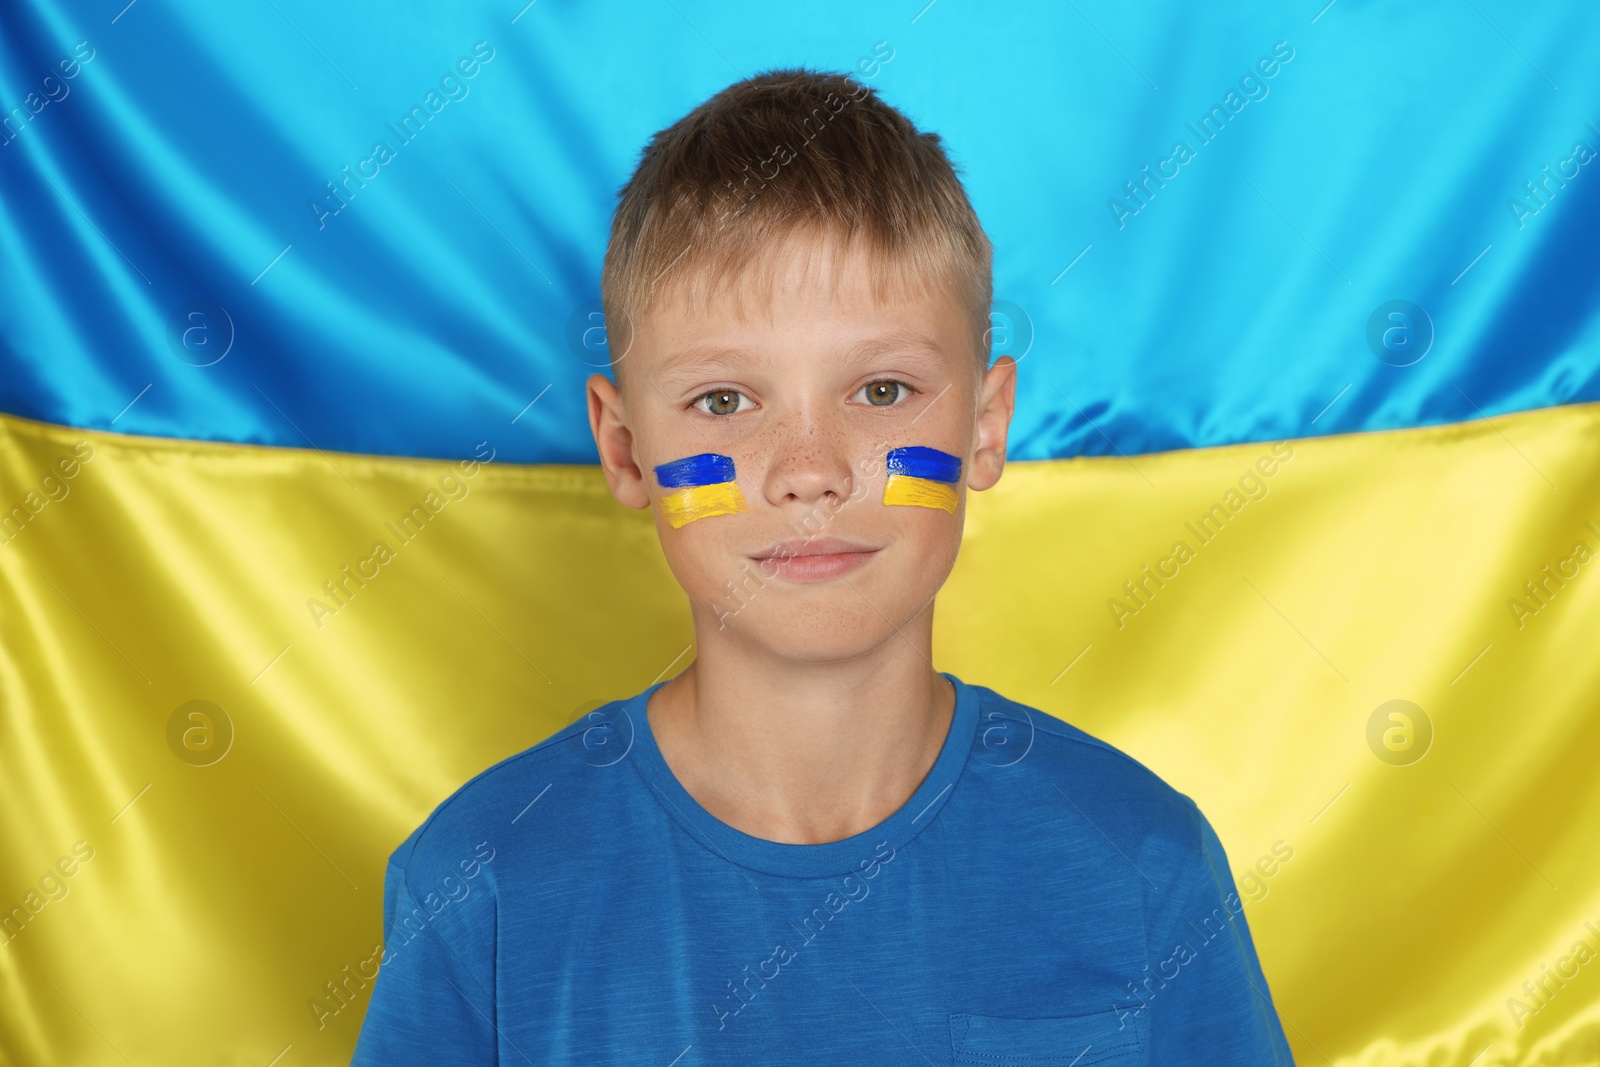 Photo of Little boy near Ukrainian flag. No war concept